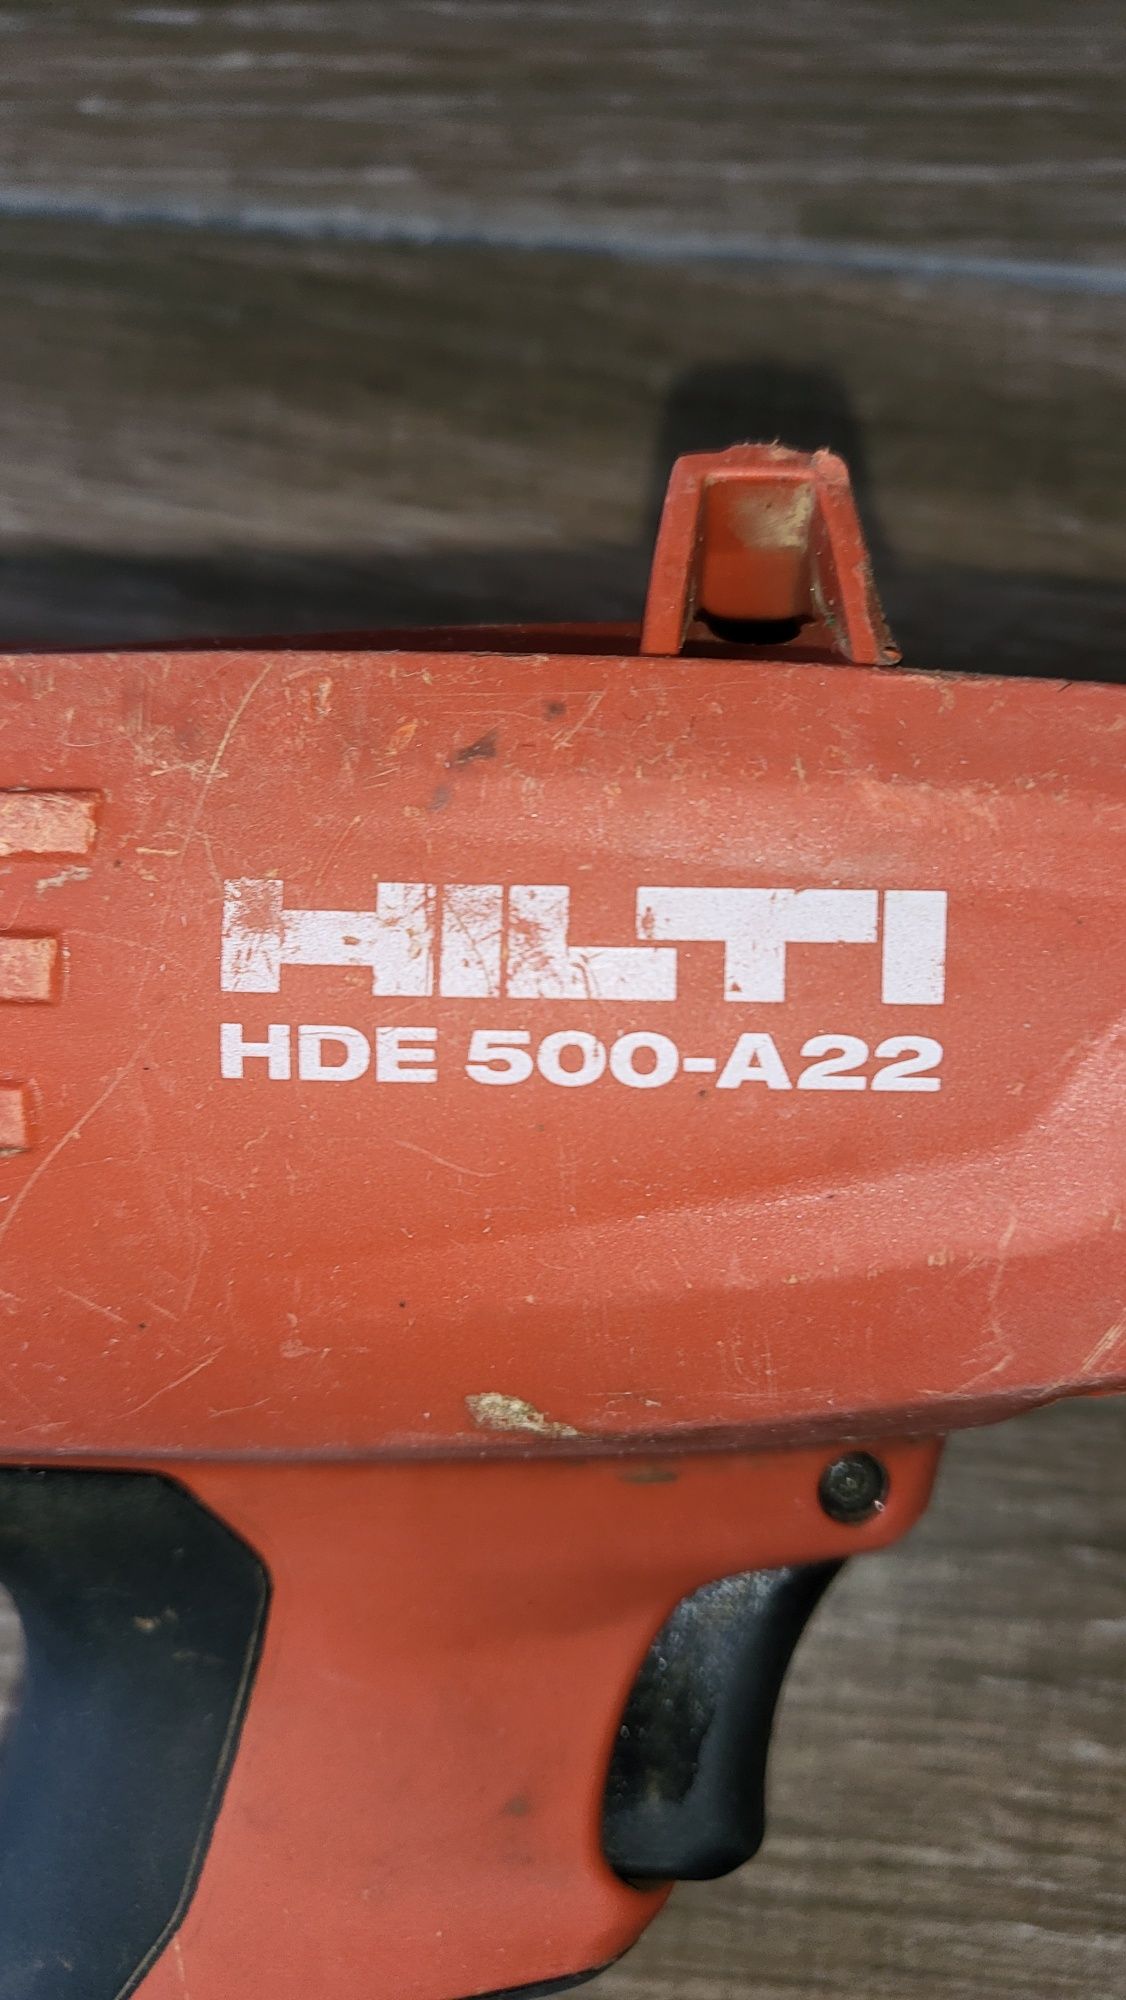 Hilti HDE 500-A22